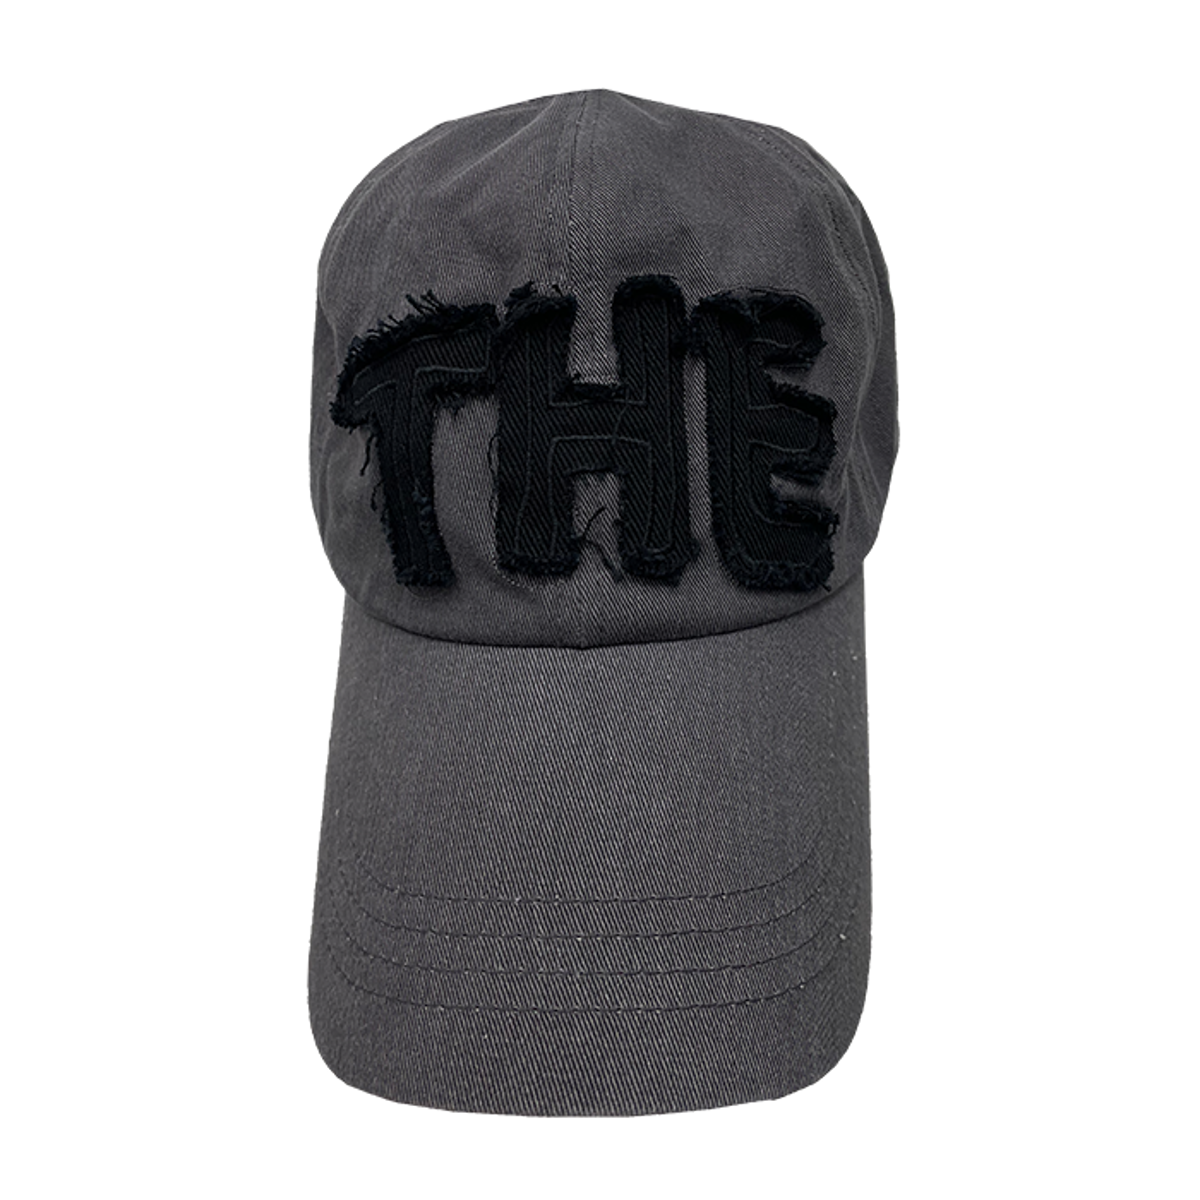 TCM the cap